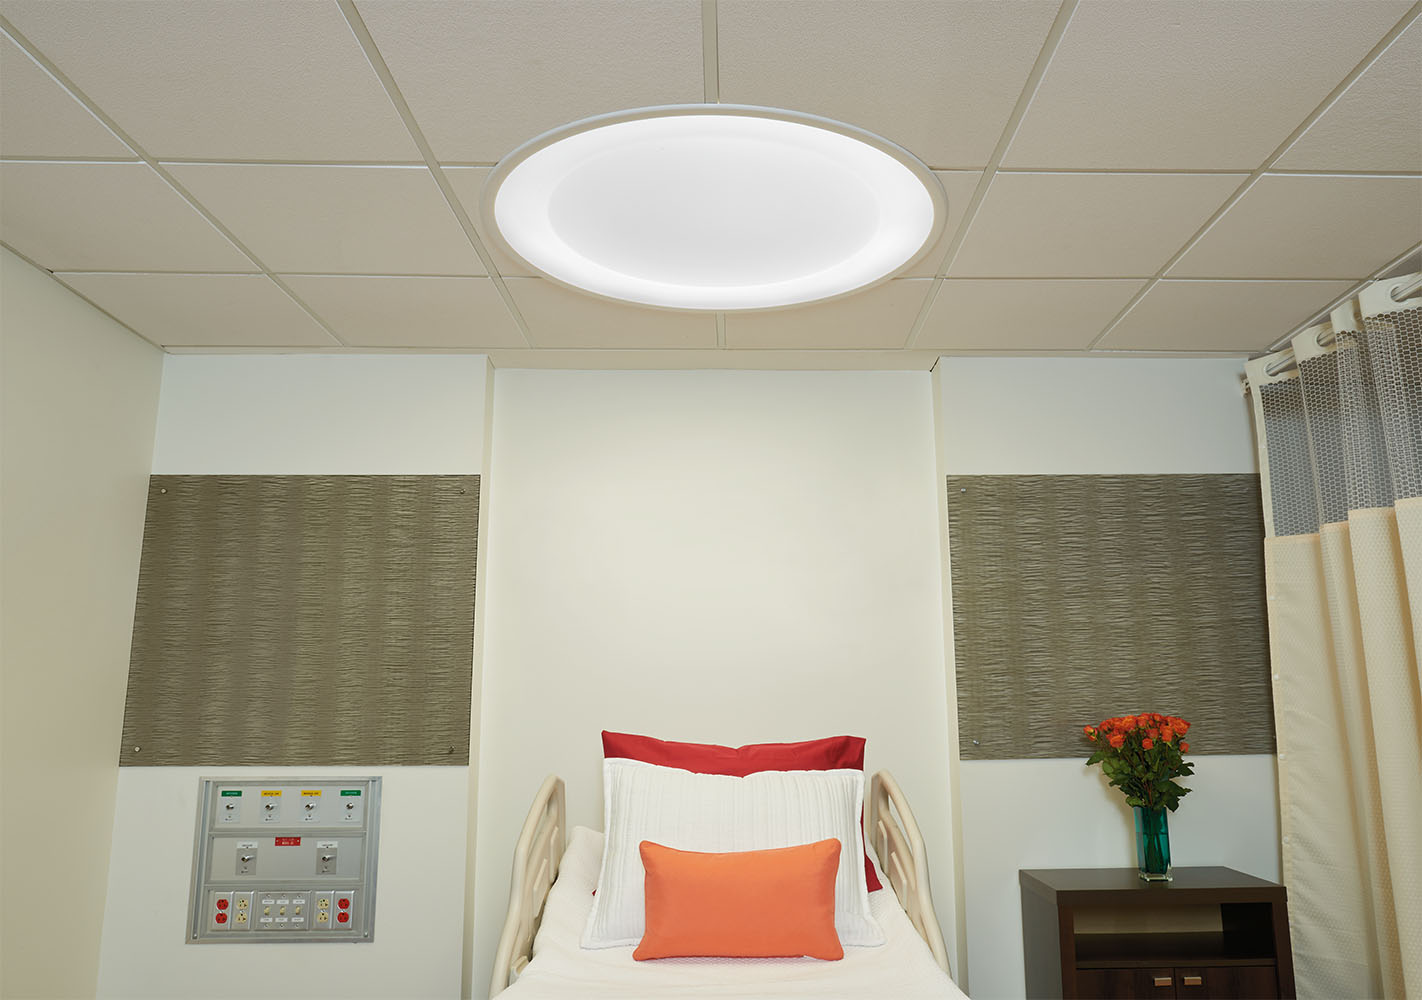 Symmetry patient room lighting fixture over a patient bed.